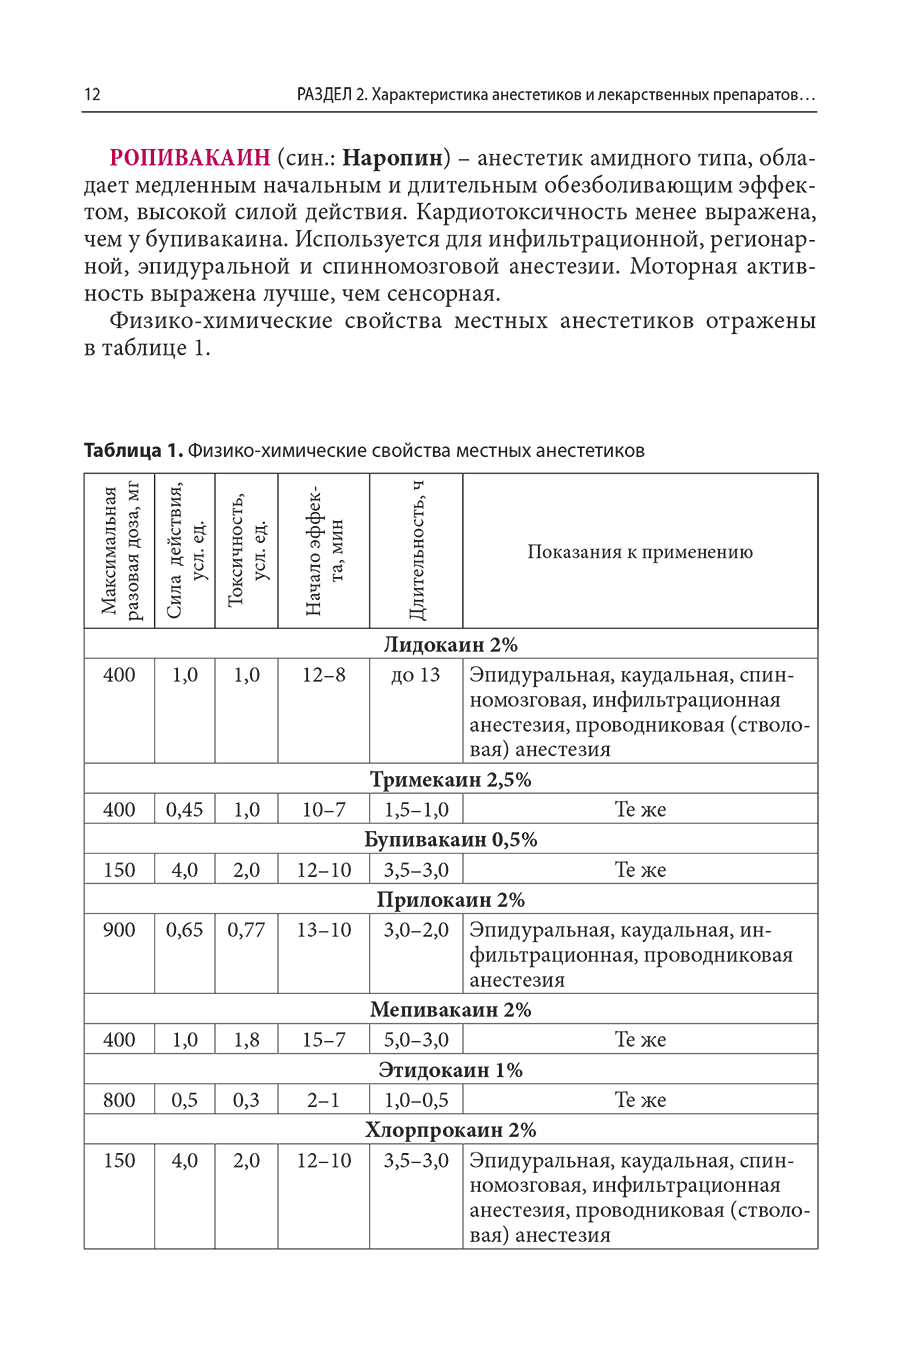 Таблица 1. Физико-химические свойства местных анестетиков